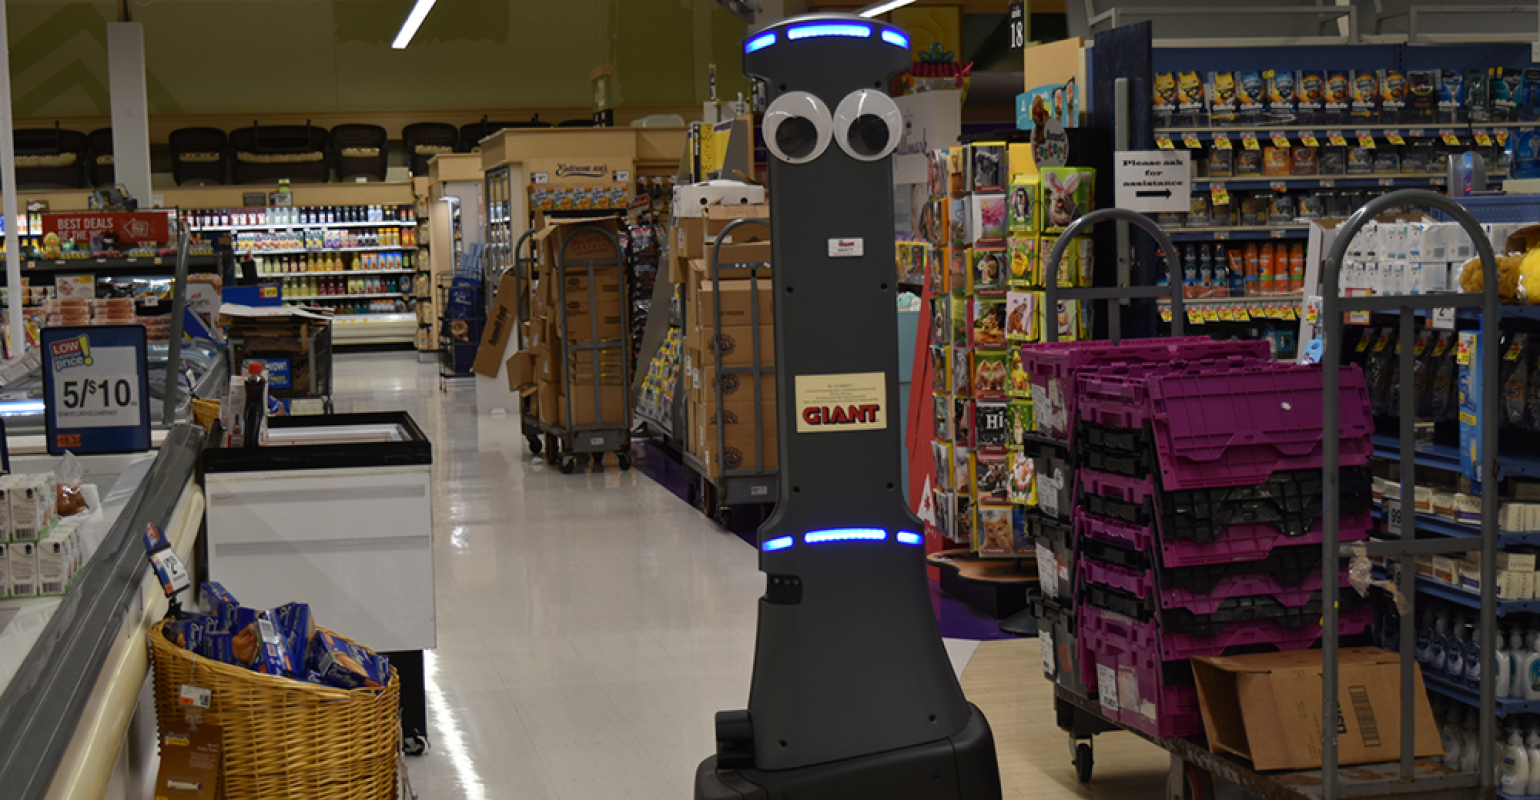 Løb Beskrivelse Kejserlig Giant/Martin's, Stop & Shop begin robot rollout | Supermarket News